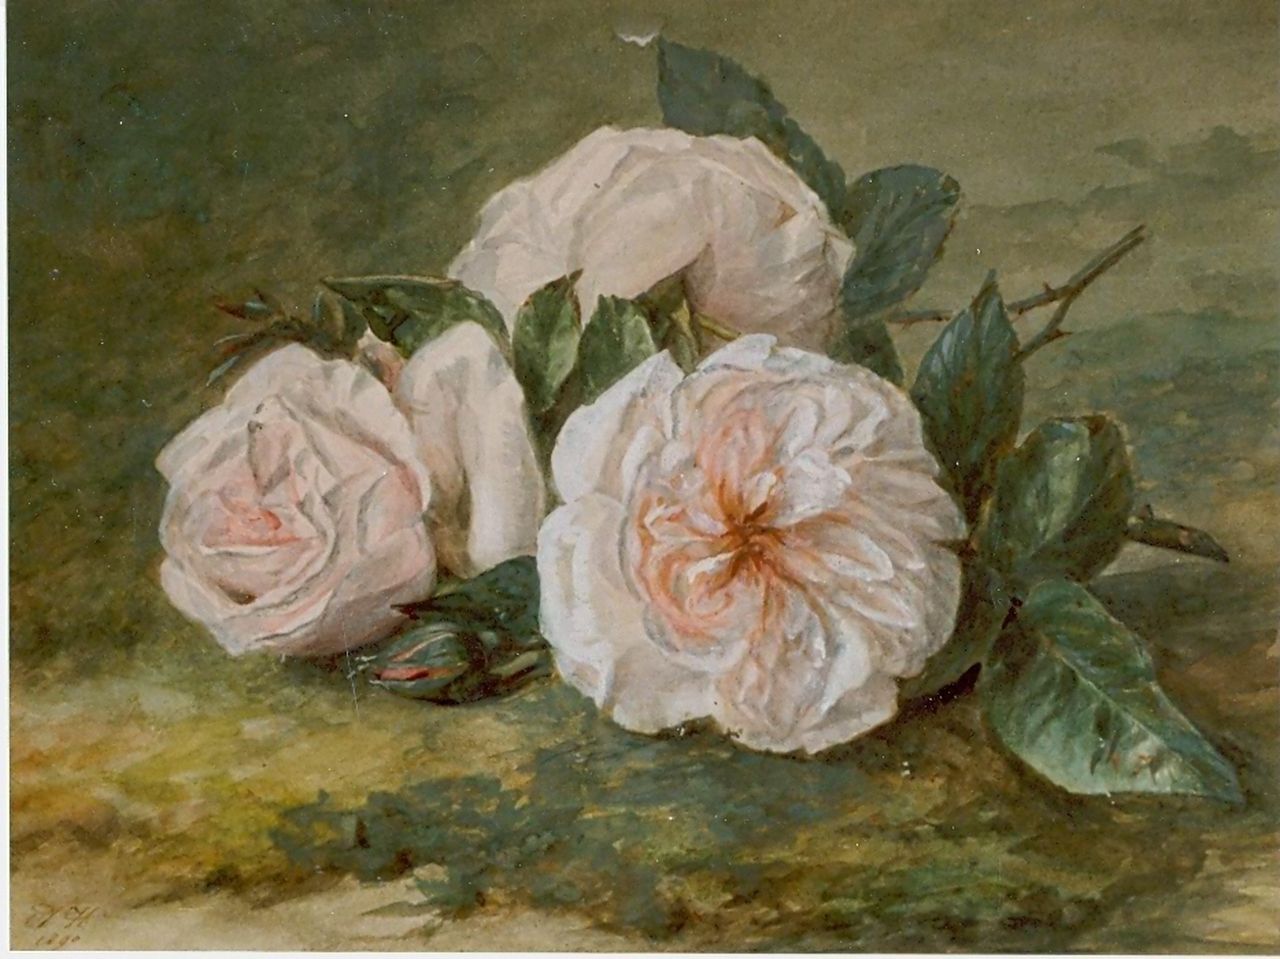 Haanen A.J.  | Adriana Johanna Haanen, Een takje roze rozen, aquarel op papier 21,0 x 25,6 cm, gesigneerd linksonder en gedateerd 1890